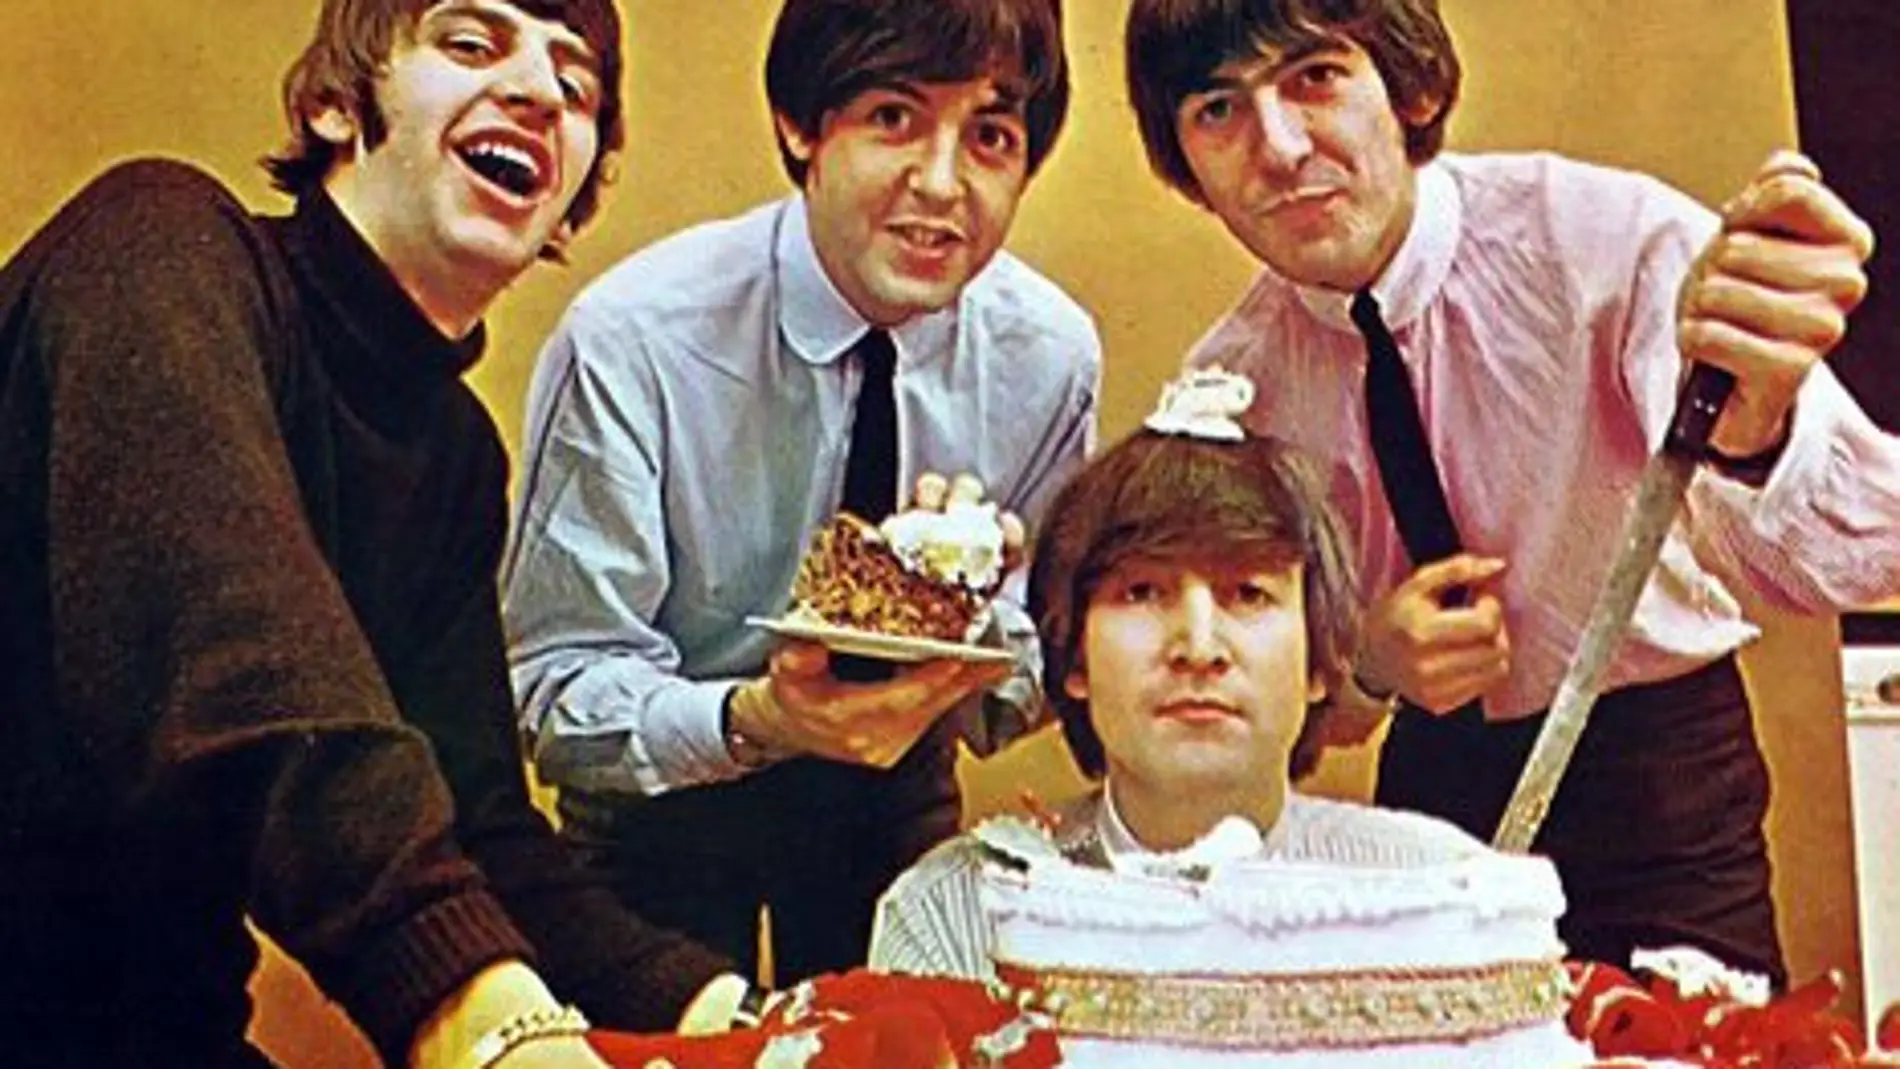 Ay, los Beatles, que majos elos, y que bien sabe la comida cuando los escuchamos.